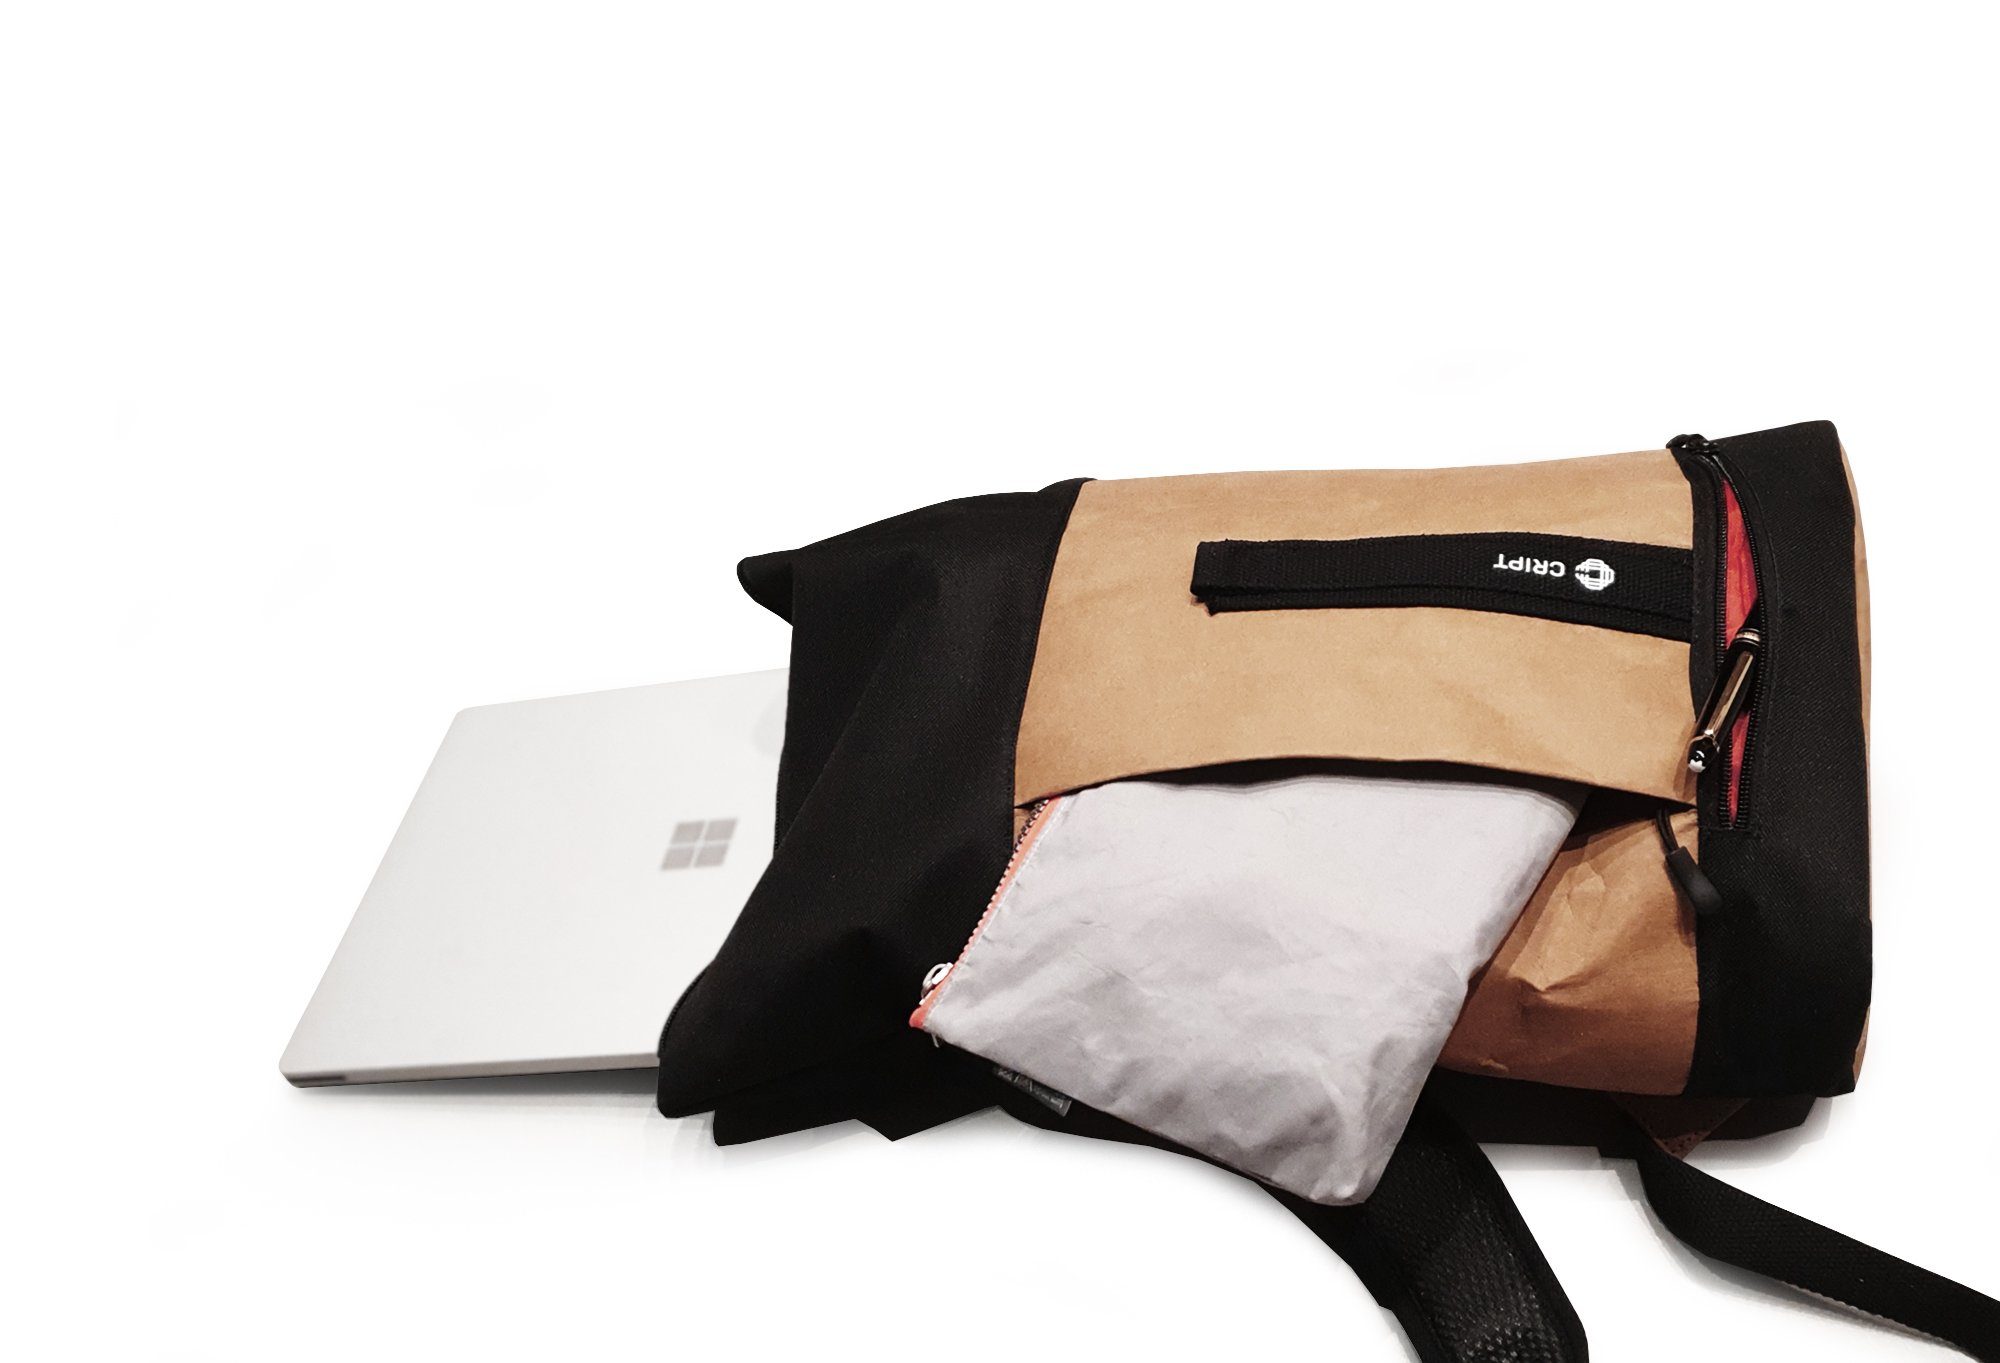 CRIPT Rucksack veggy backpack, Kraft nachhaltig leicht, ökologisch, schwarz Papier, reißfest, abwaschbar